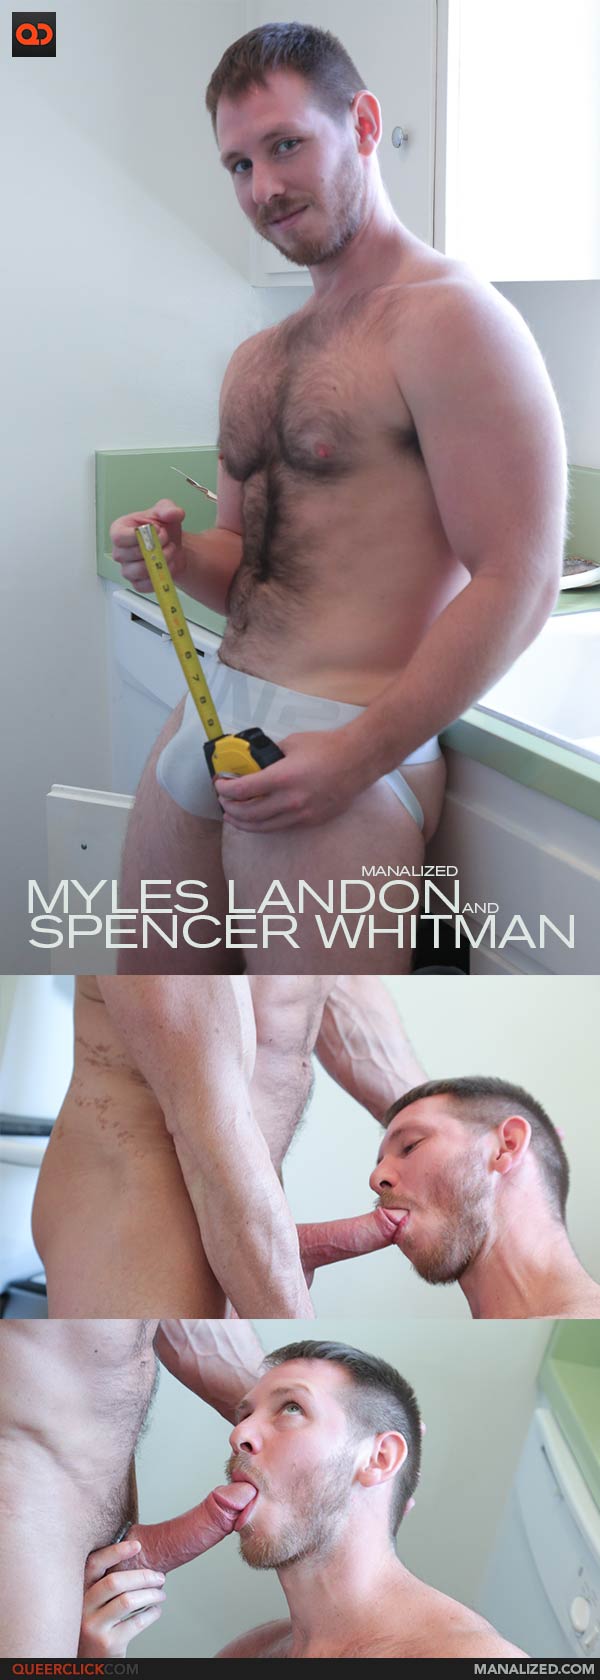 Manalized: Myles Landon and Spencer Whitman